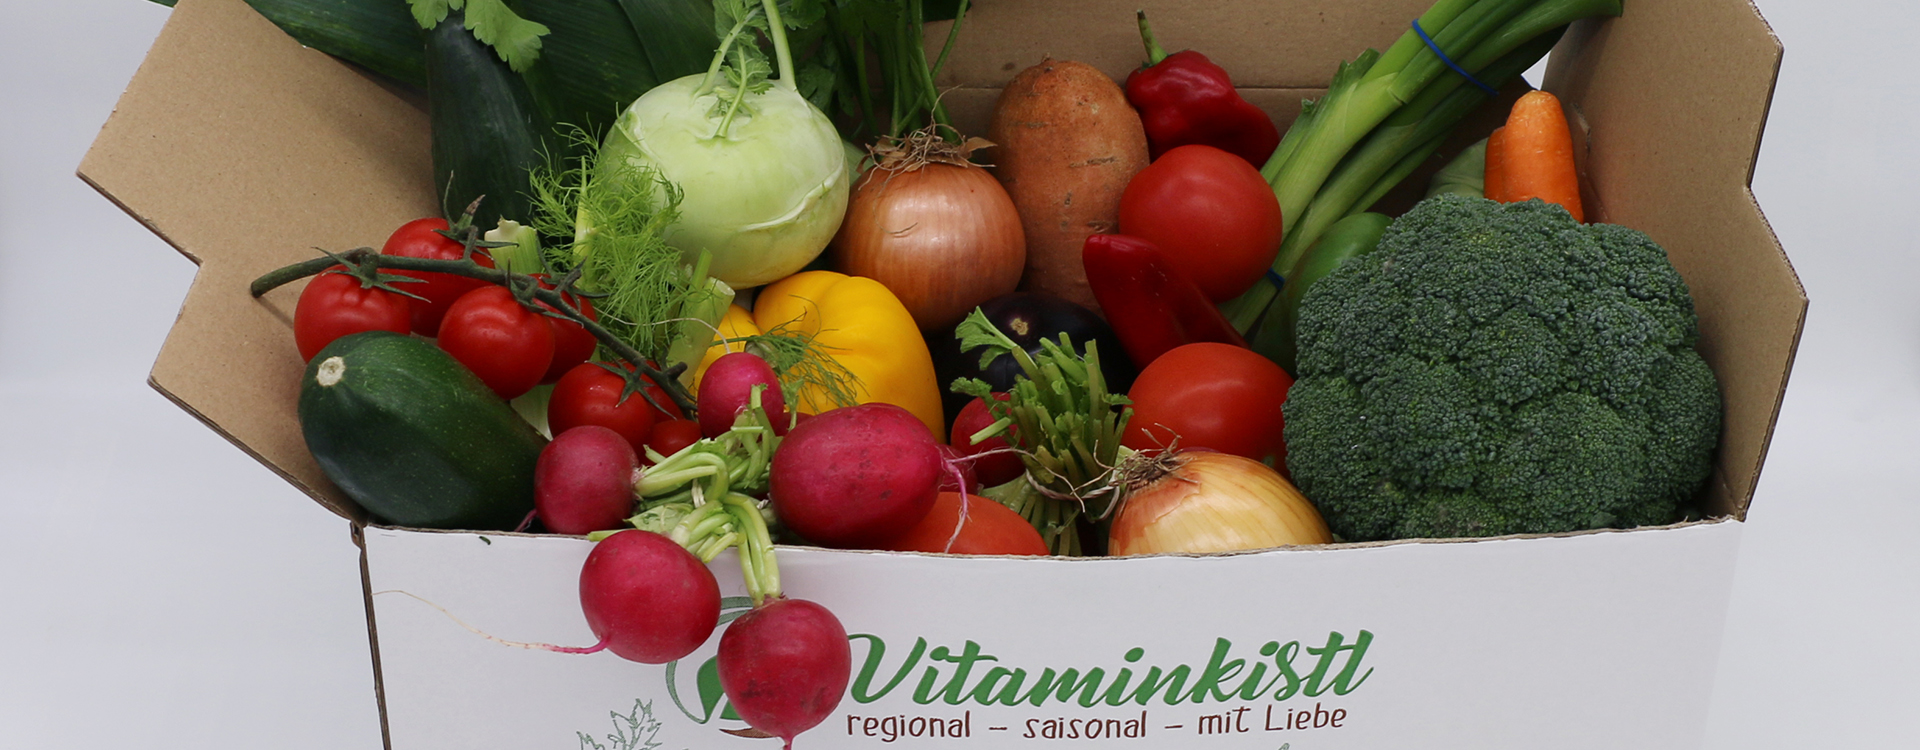 Vitaminkistl Gemüse